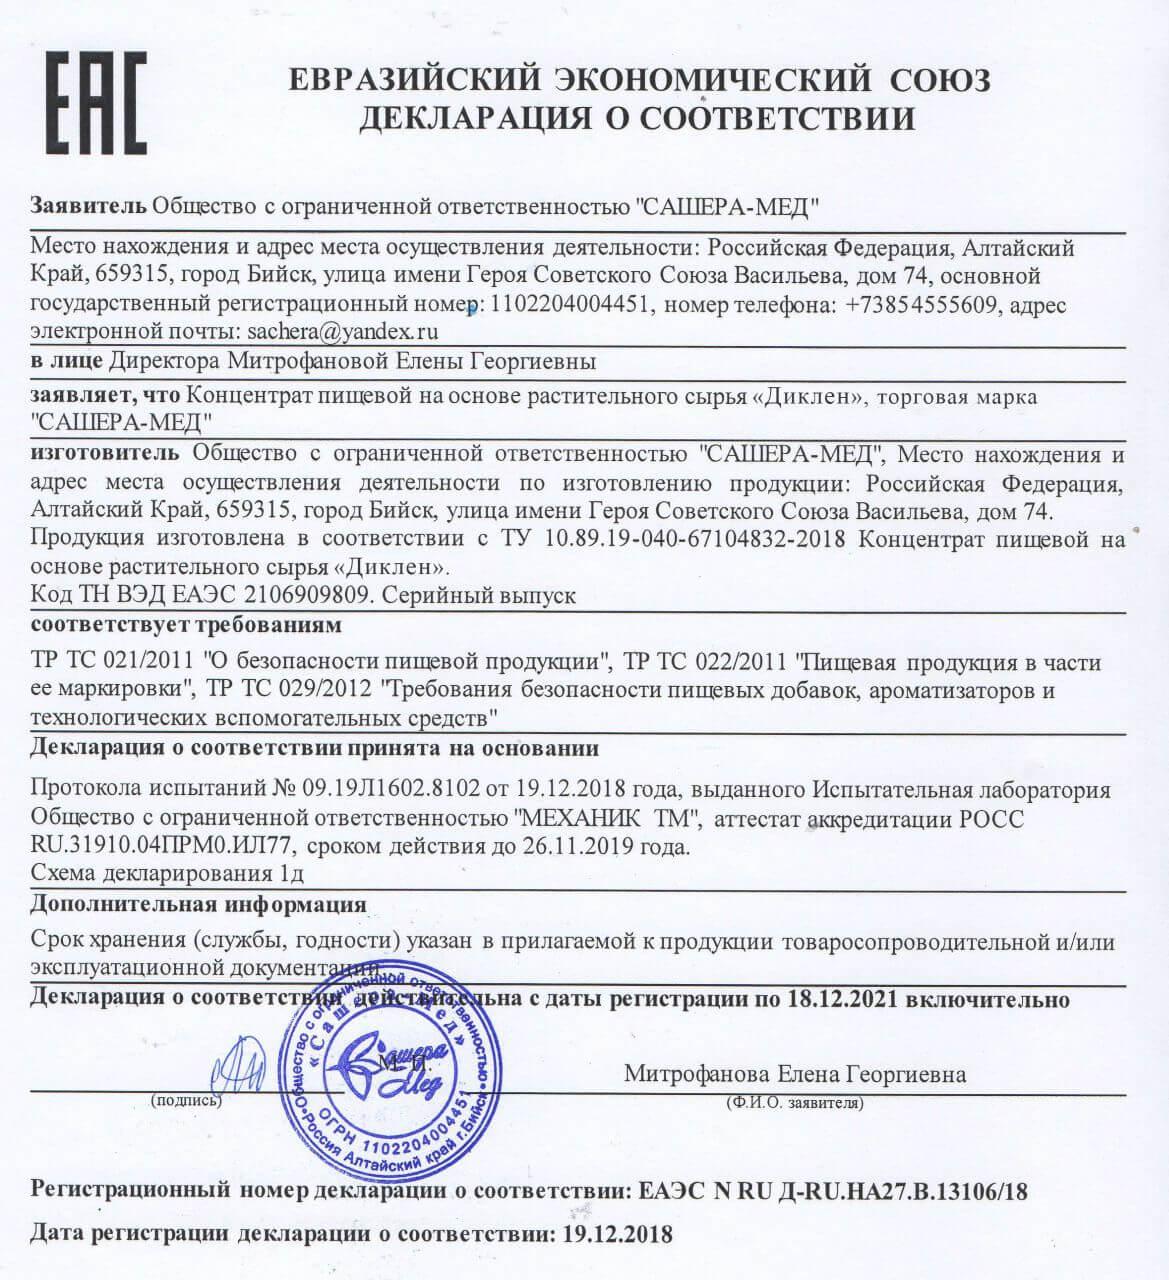 Сертификат на диклен в Липецке